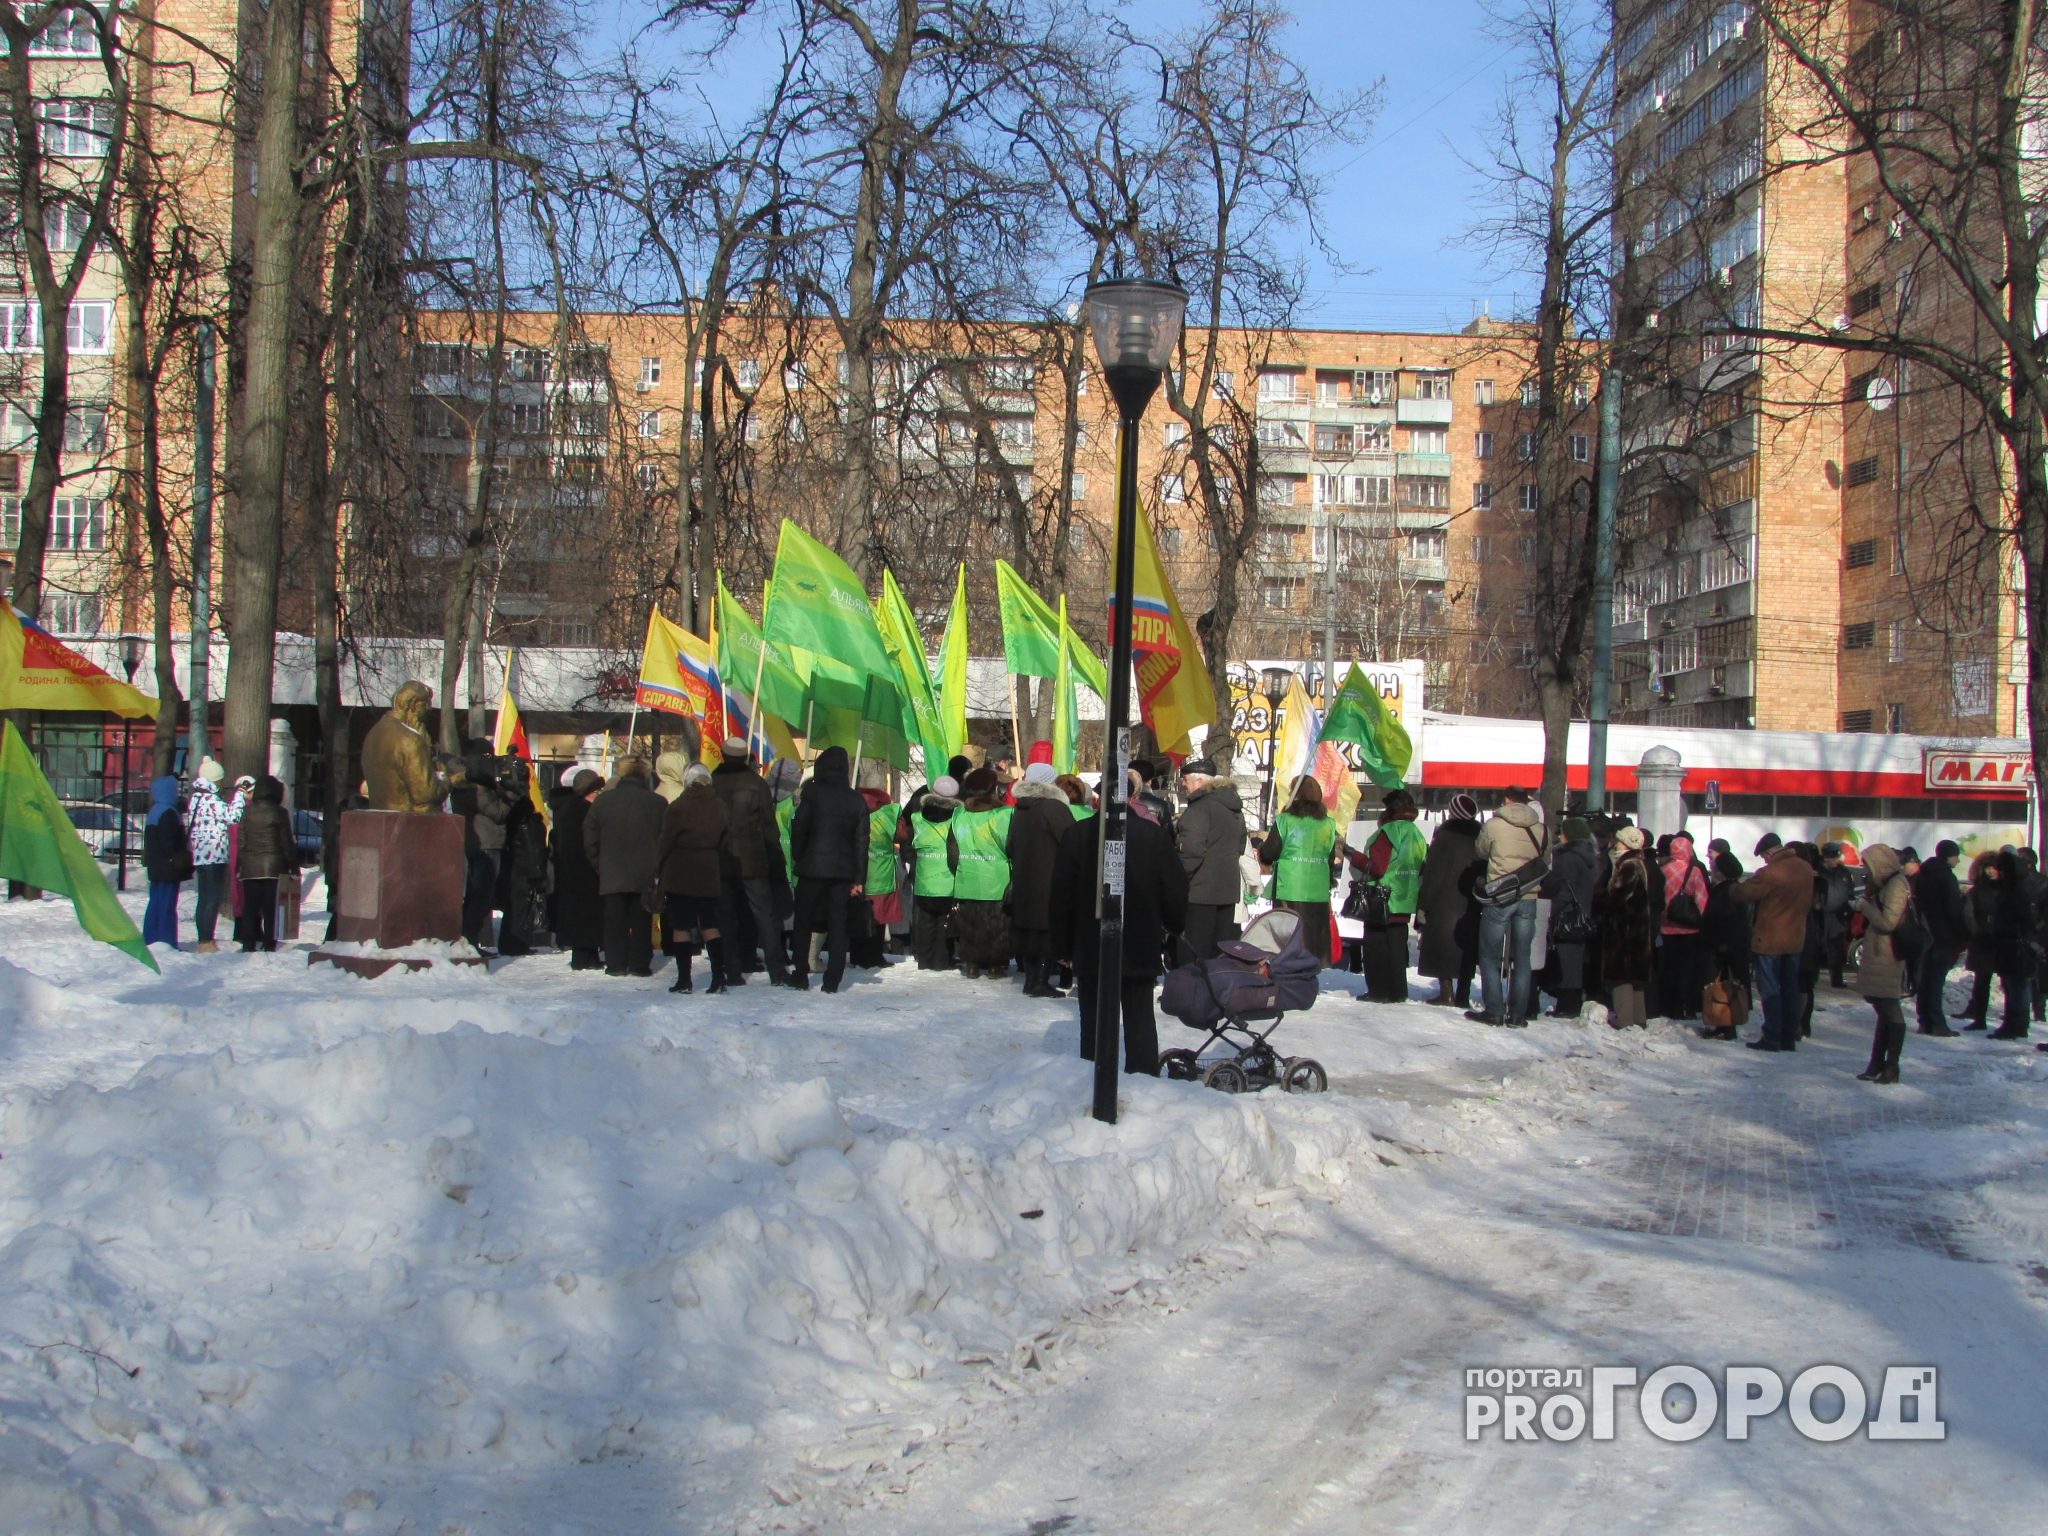 Что может ждать участников несанкционированного митинга в Нижнем Новгороде